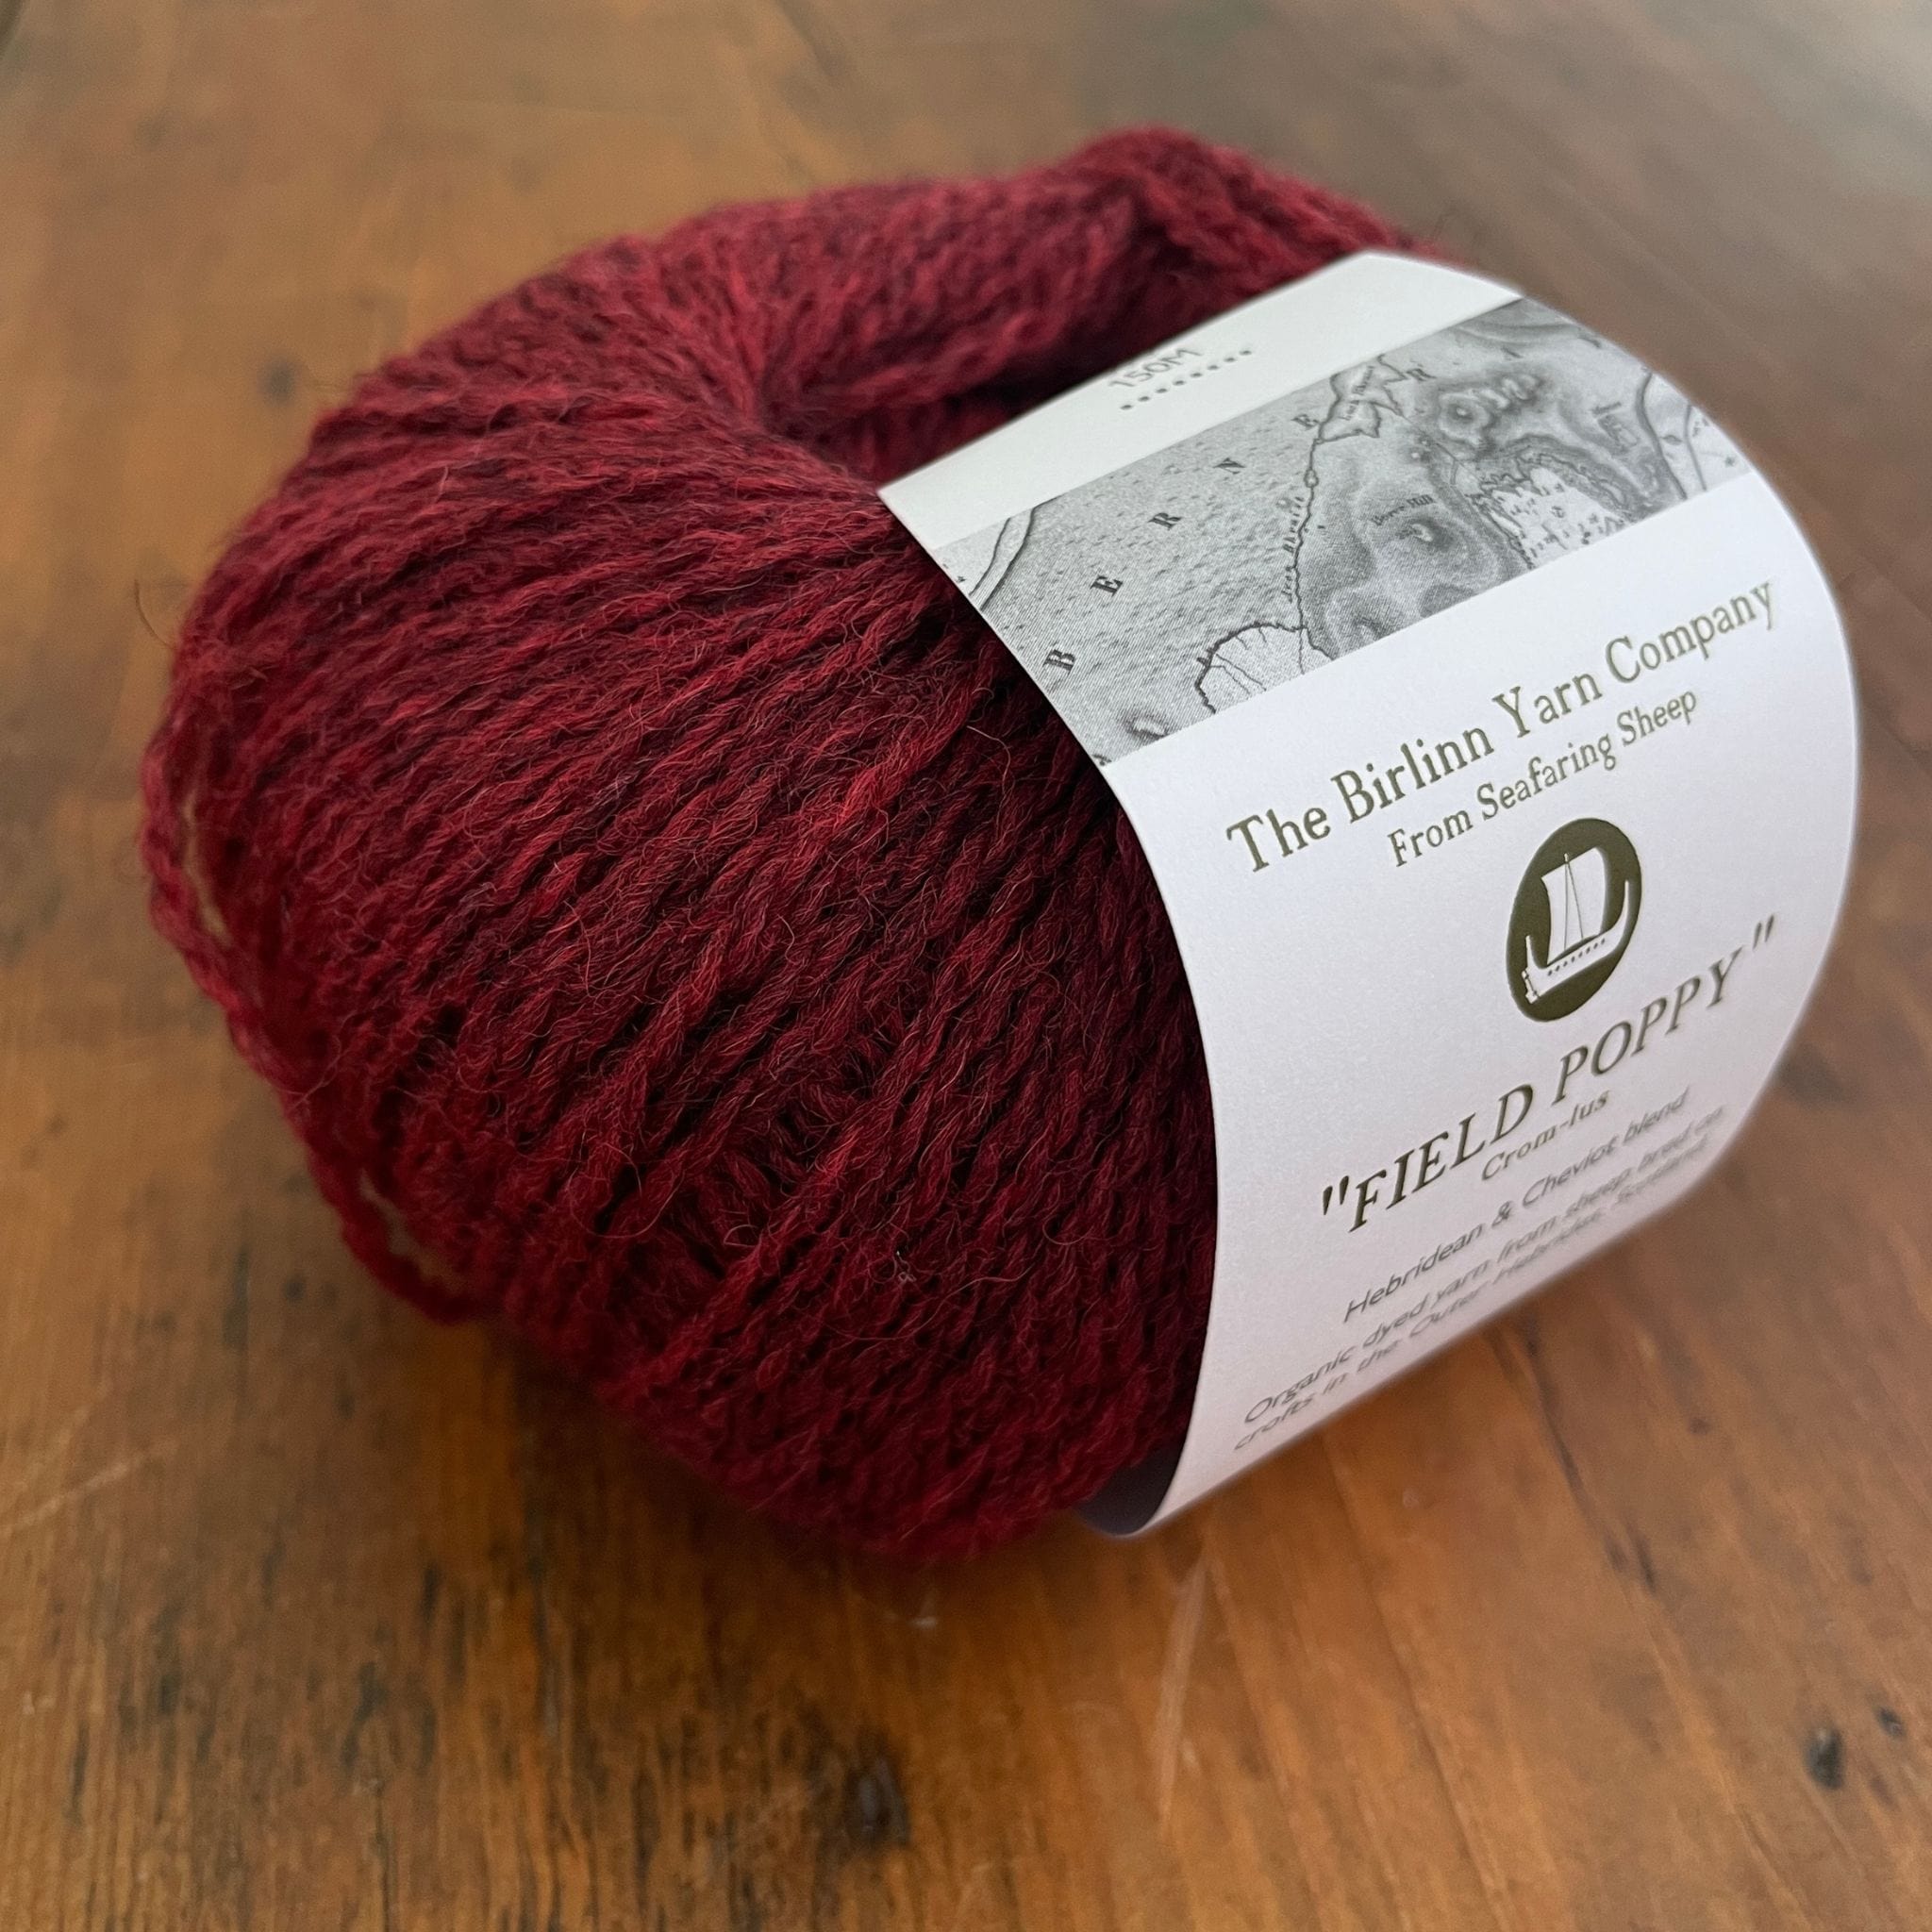 Birlinn Yarn Company Hebridean 4ply yarn shown in Field Poppy (heathered deep red)